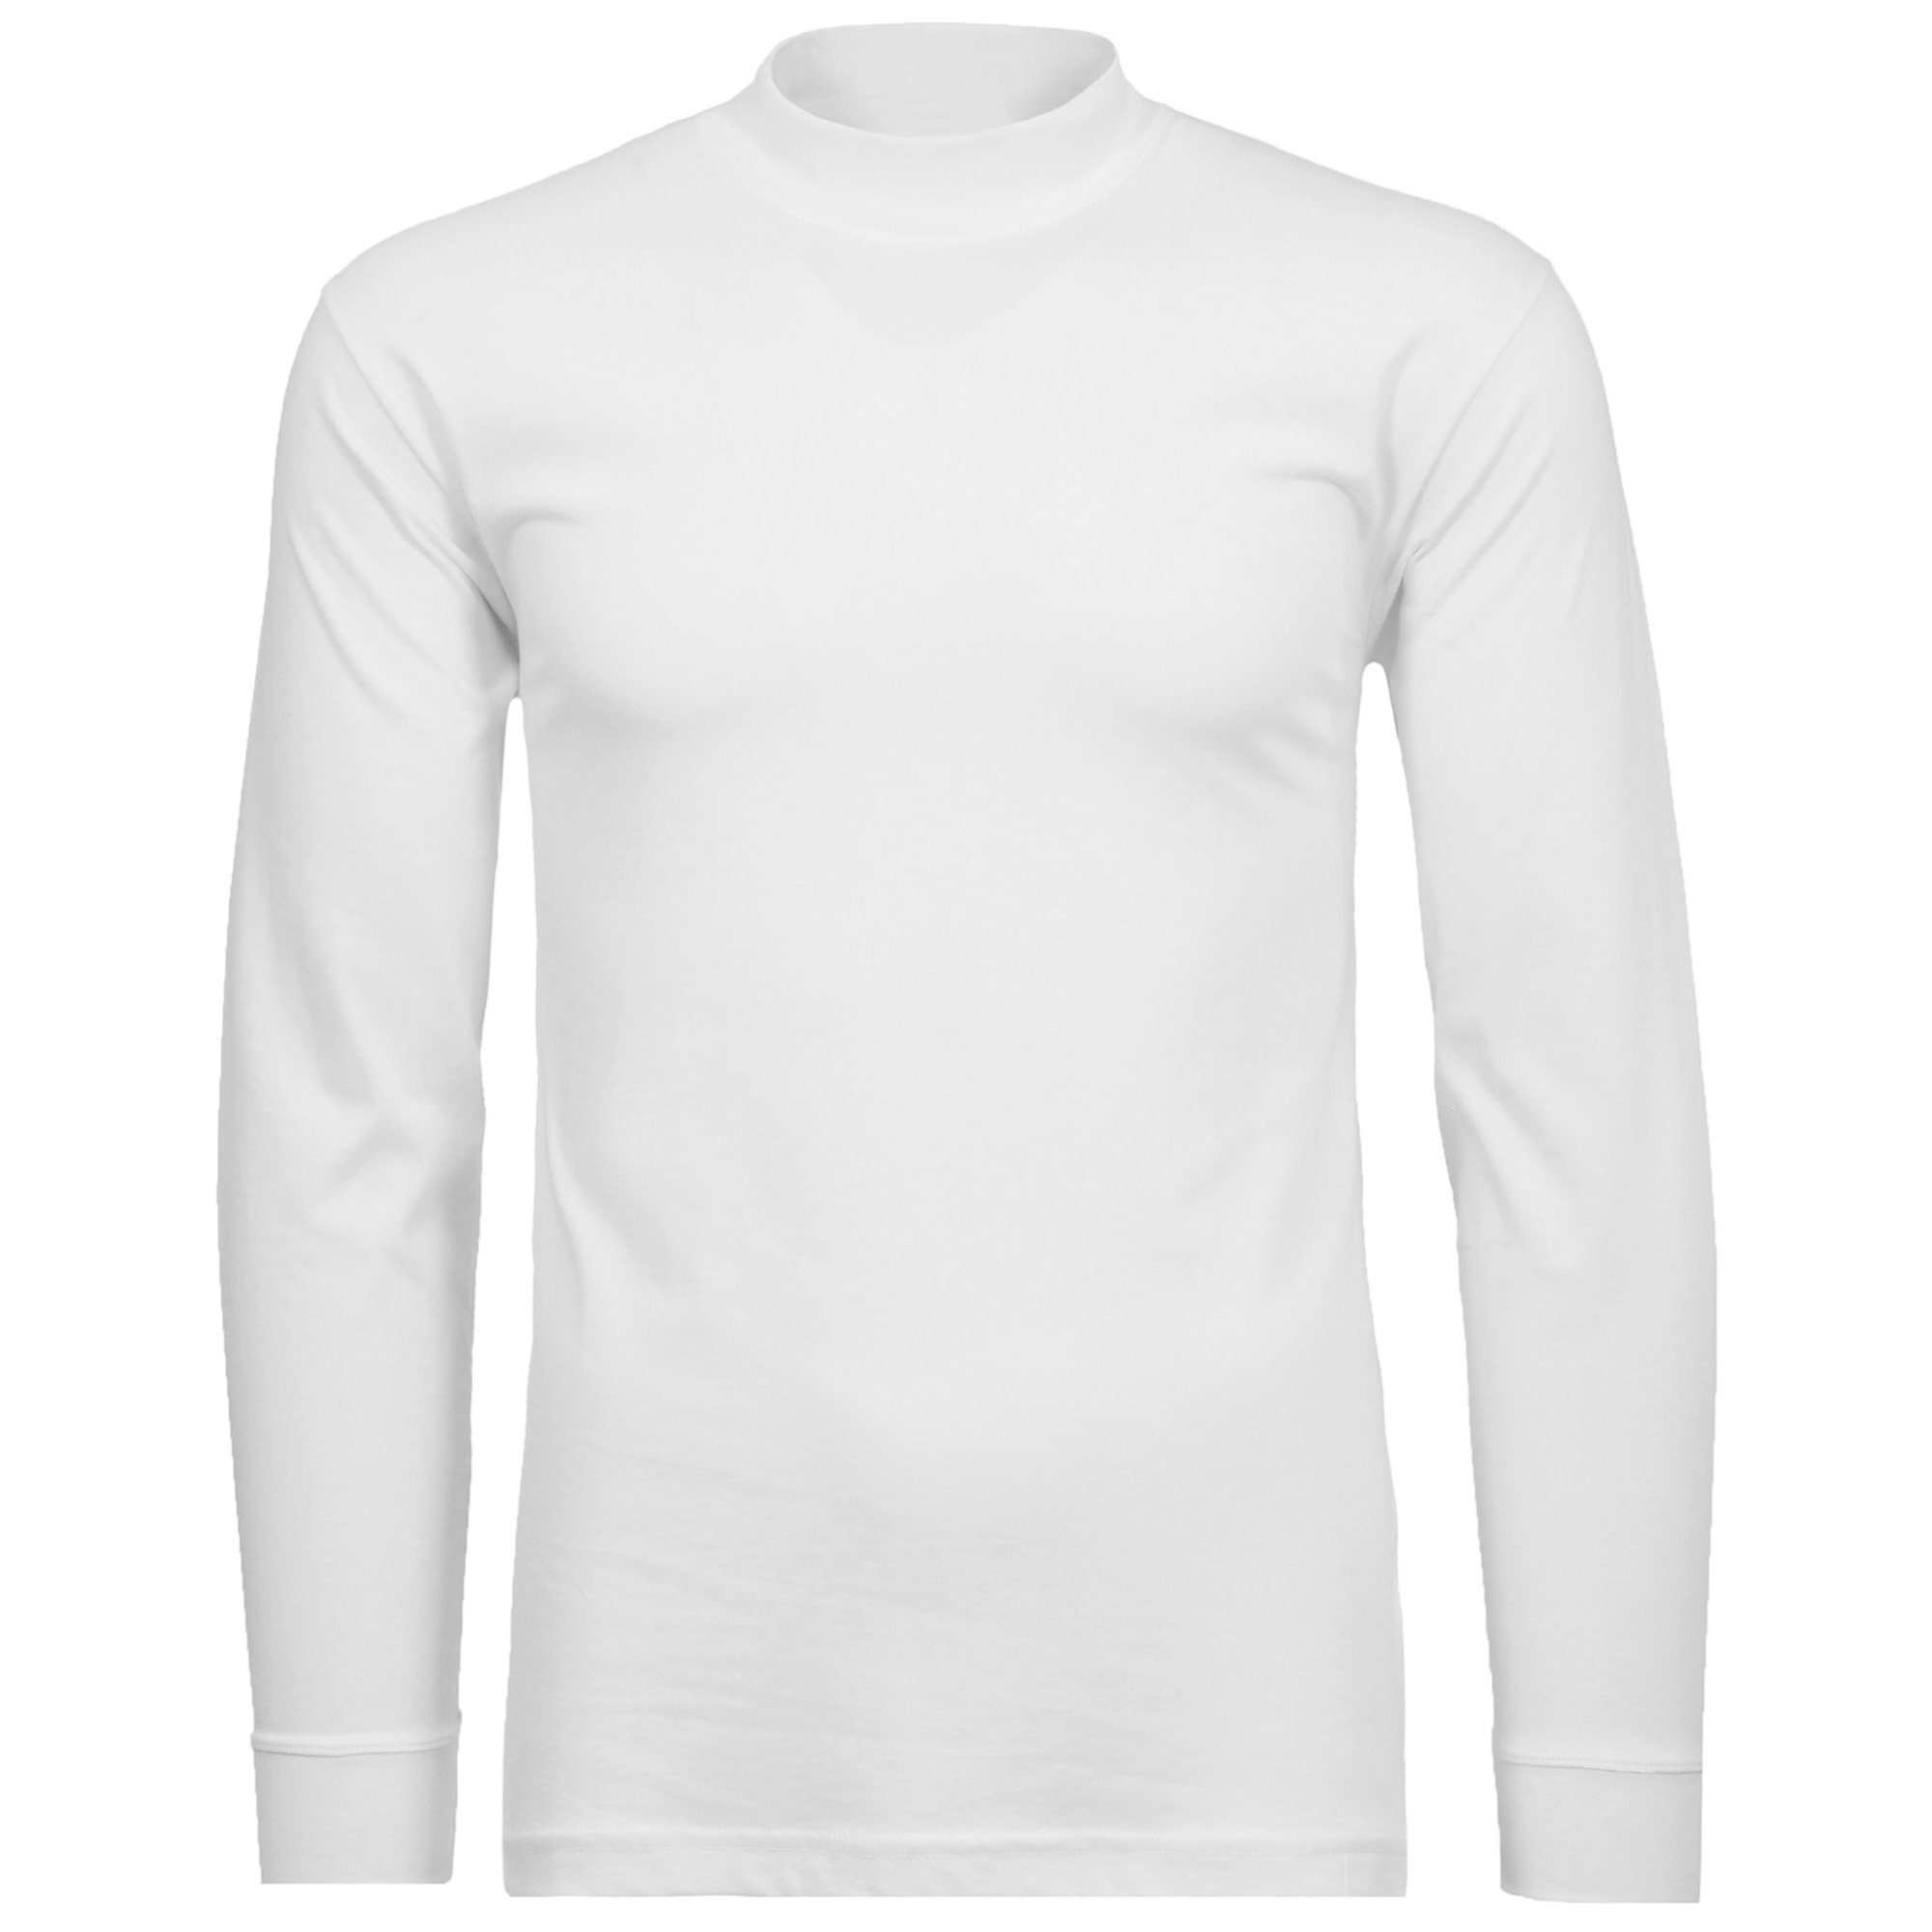 RAGMAN Sweatshirt Herren Stehkragen-Pullover - Langarm Basic Weiß